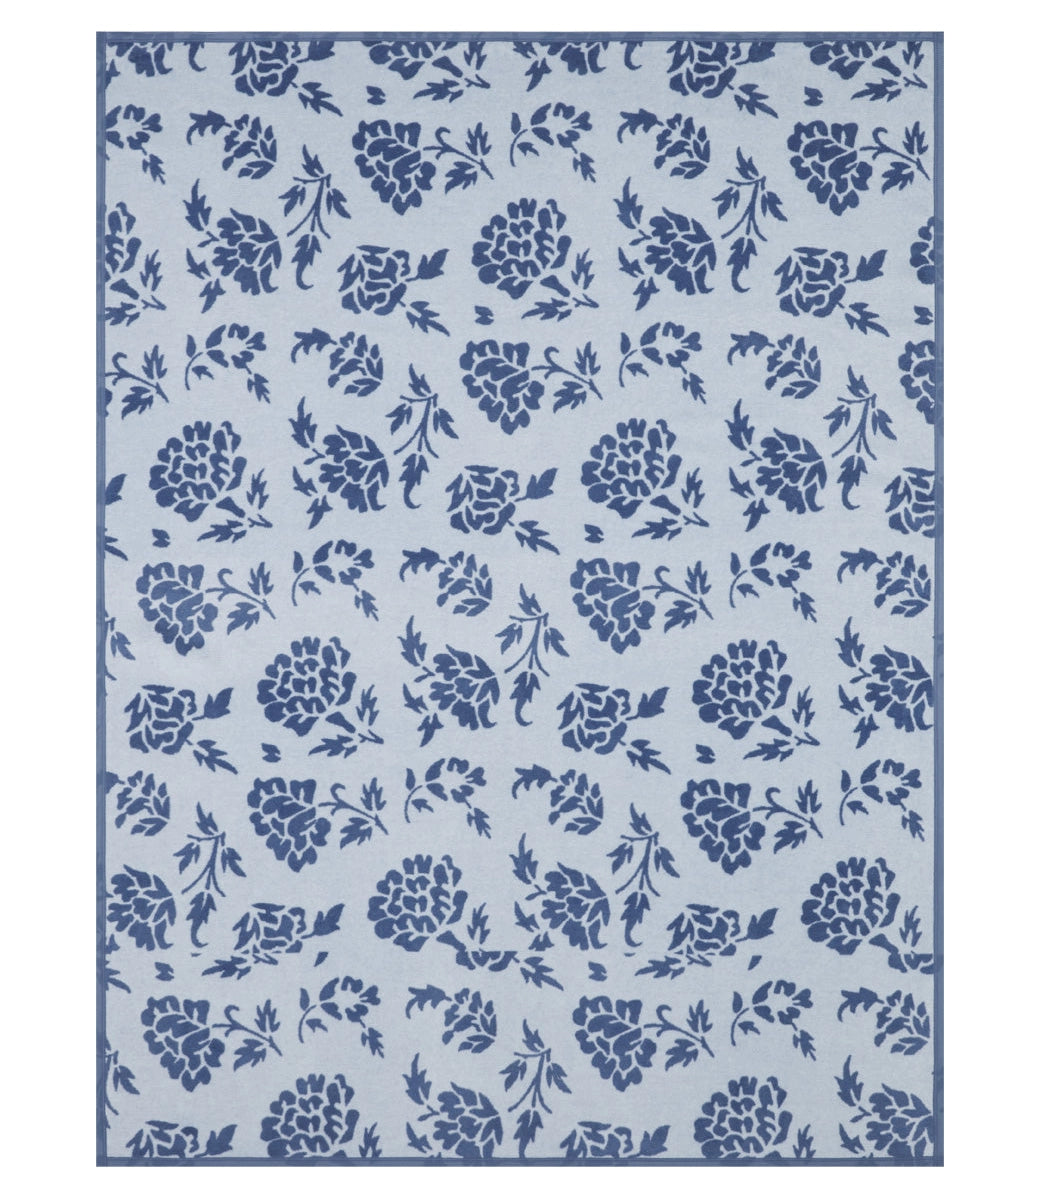 ChappyWrap Bouquet Block Print Blanket - Original Size